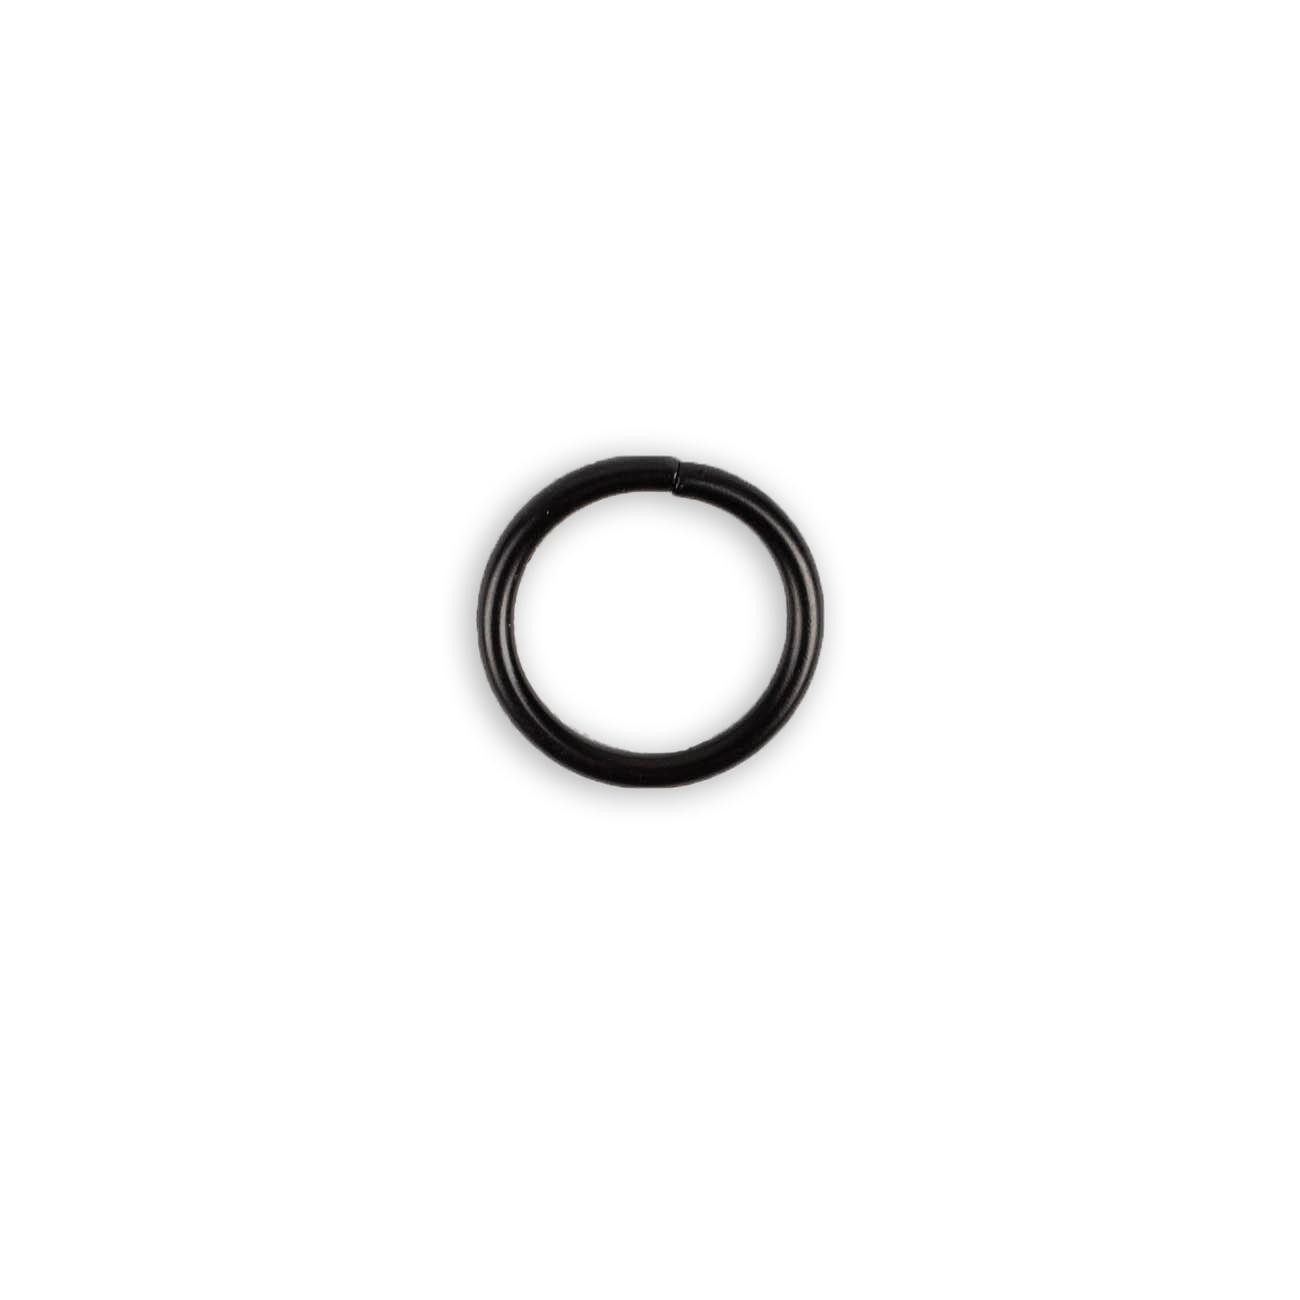 Metal ring 20 mm - black